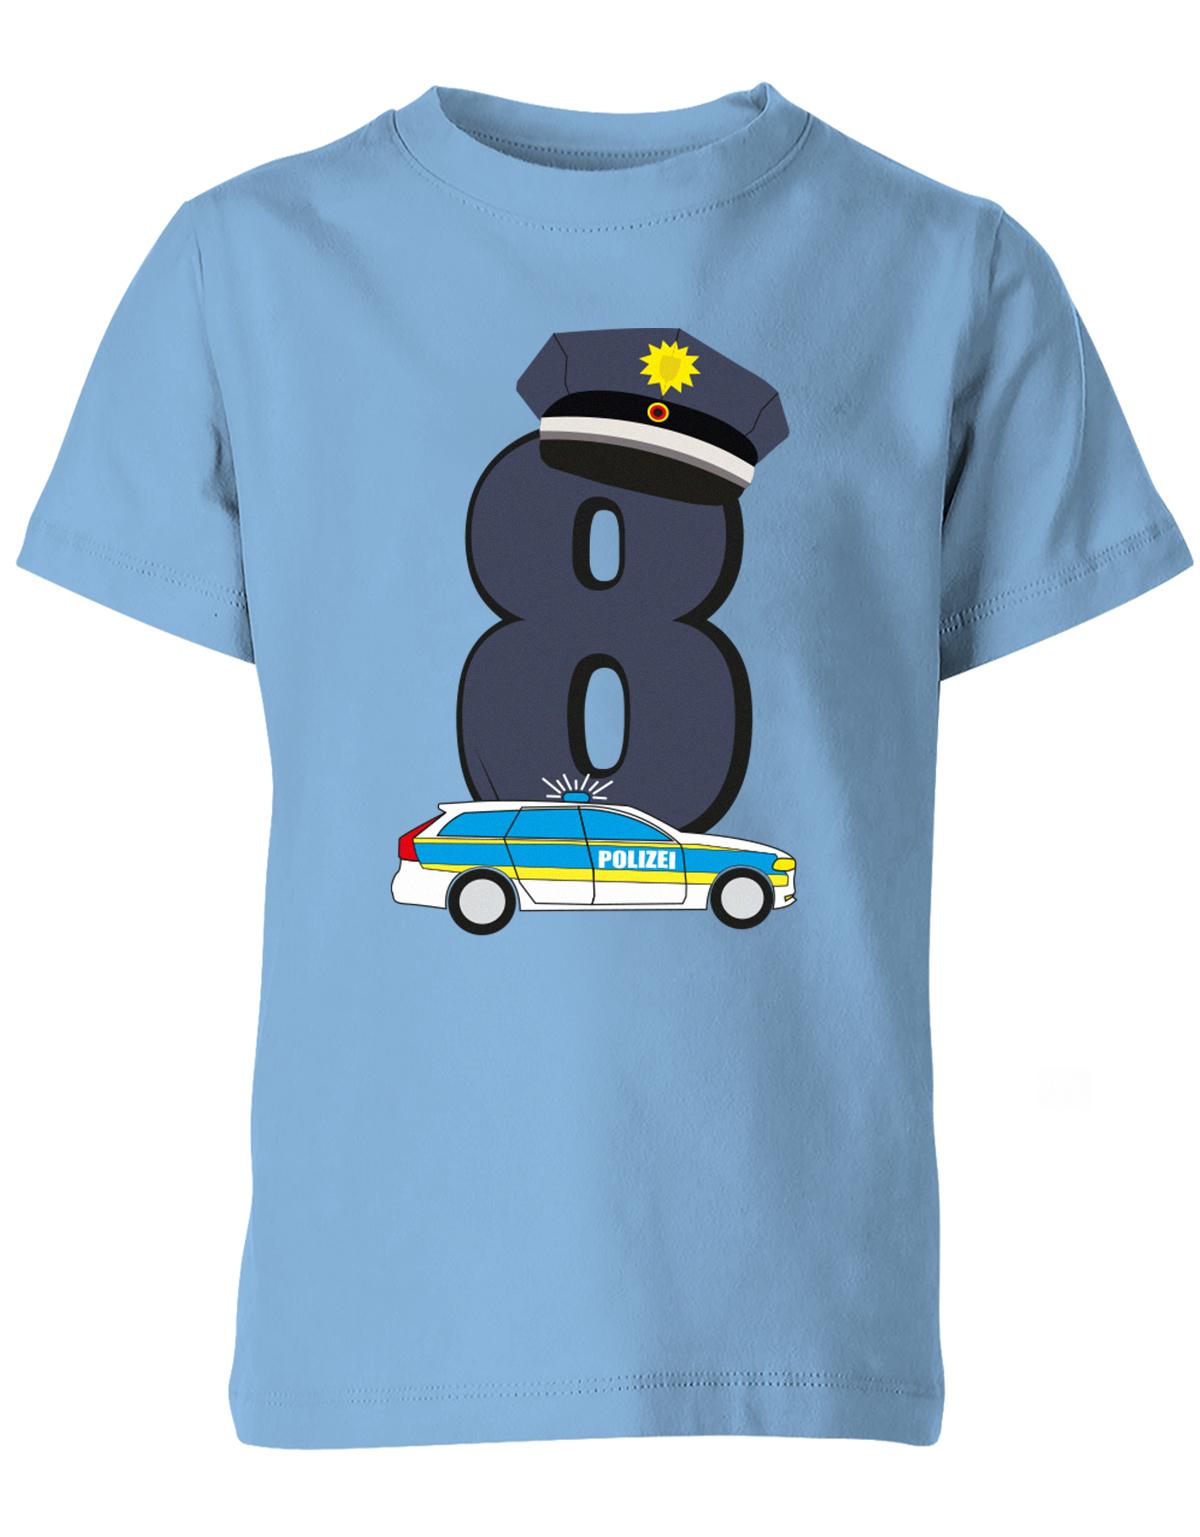 ich-bin-8-polizei-geburtstag-kinder-shirt-hellblau